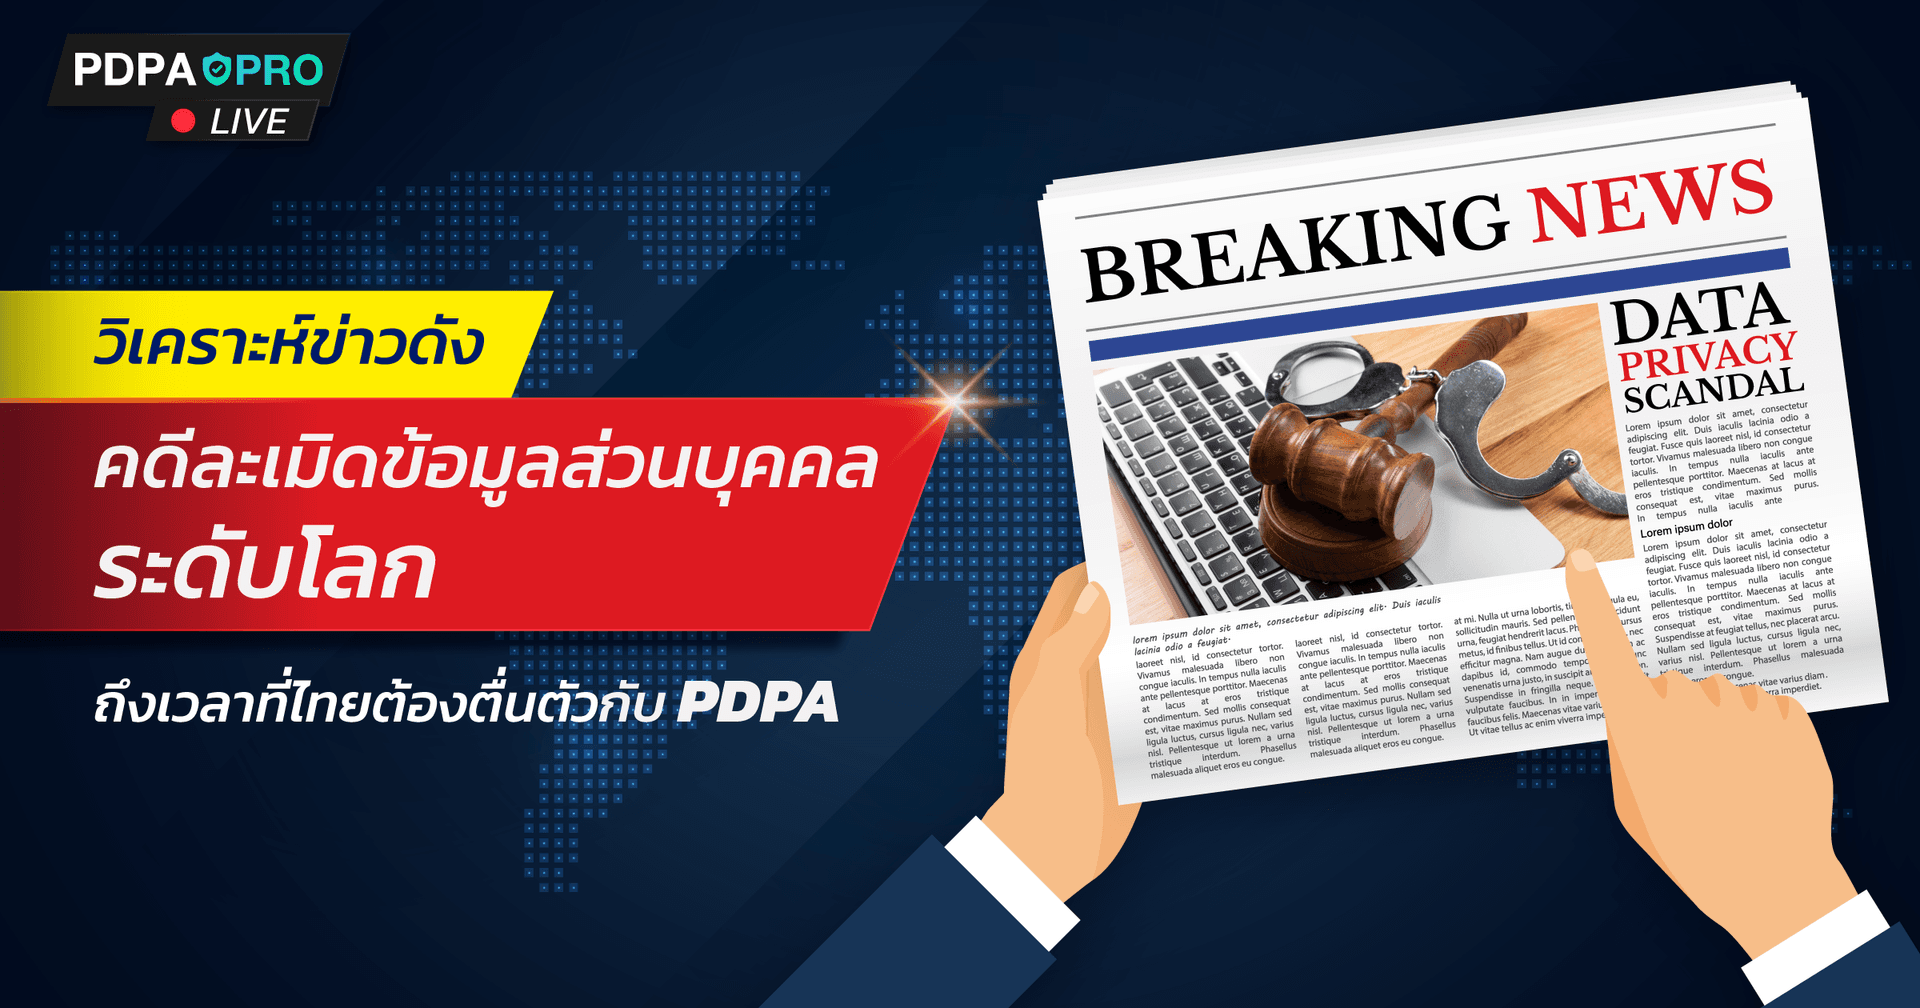 ถึงเวลาที่ไทยต้องตื่นตัวกับ PDPA  วิเคราะห์คดีดังละเมิดข้อมูลส่วนบุคคลระดับโลก